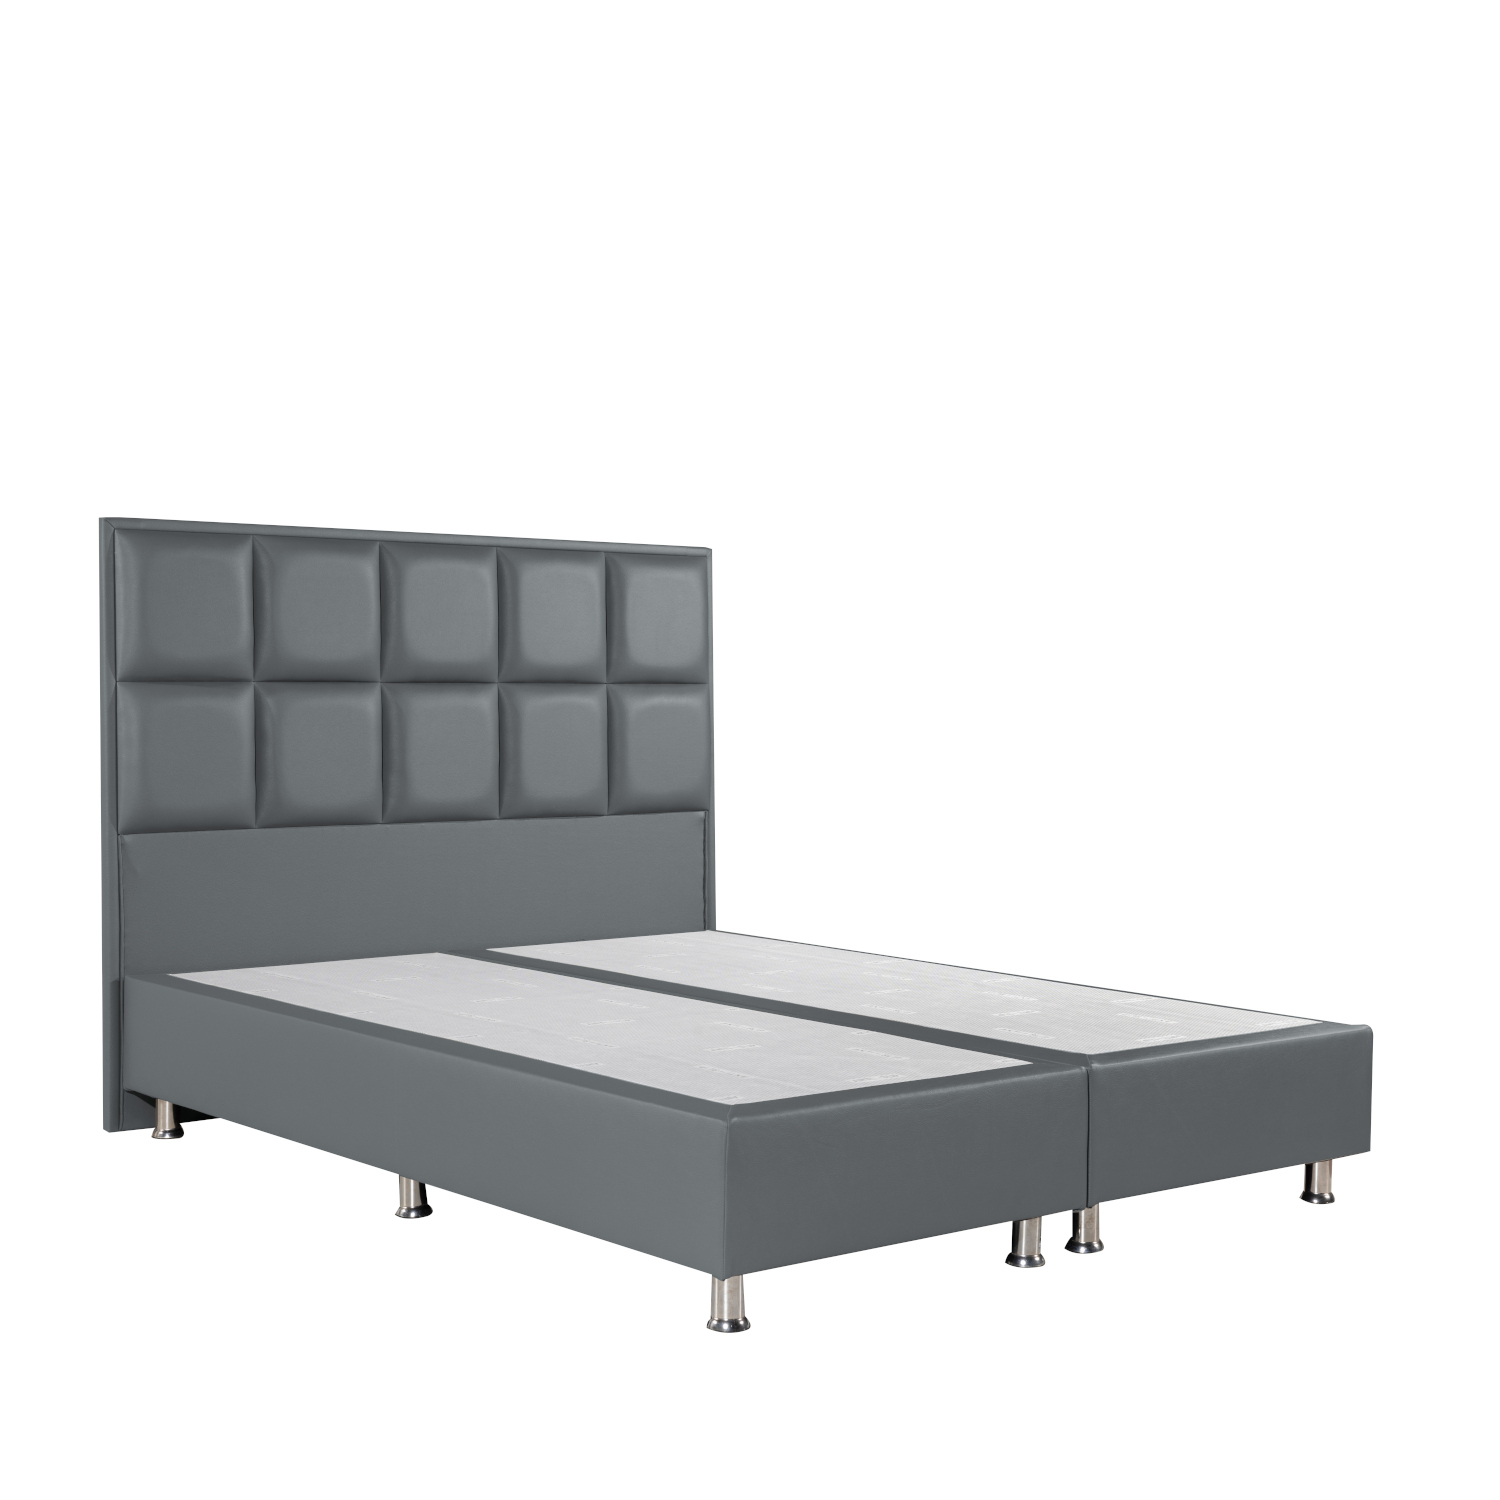 Κρεβάτι CLEMENTINE Γκρι PU (Στρώμα 160x200cm)